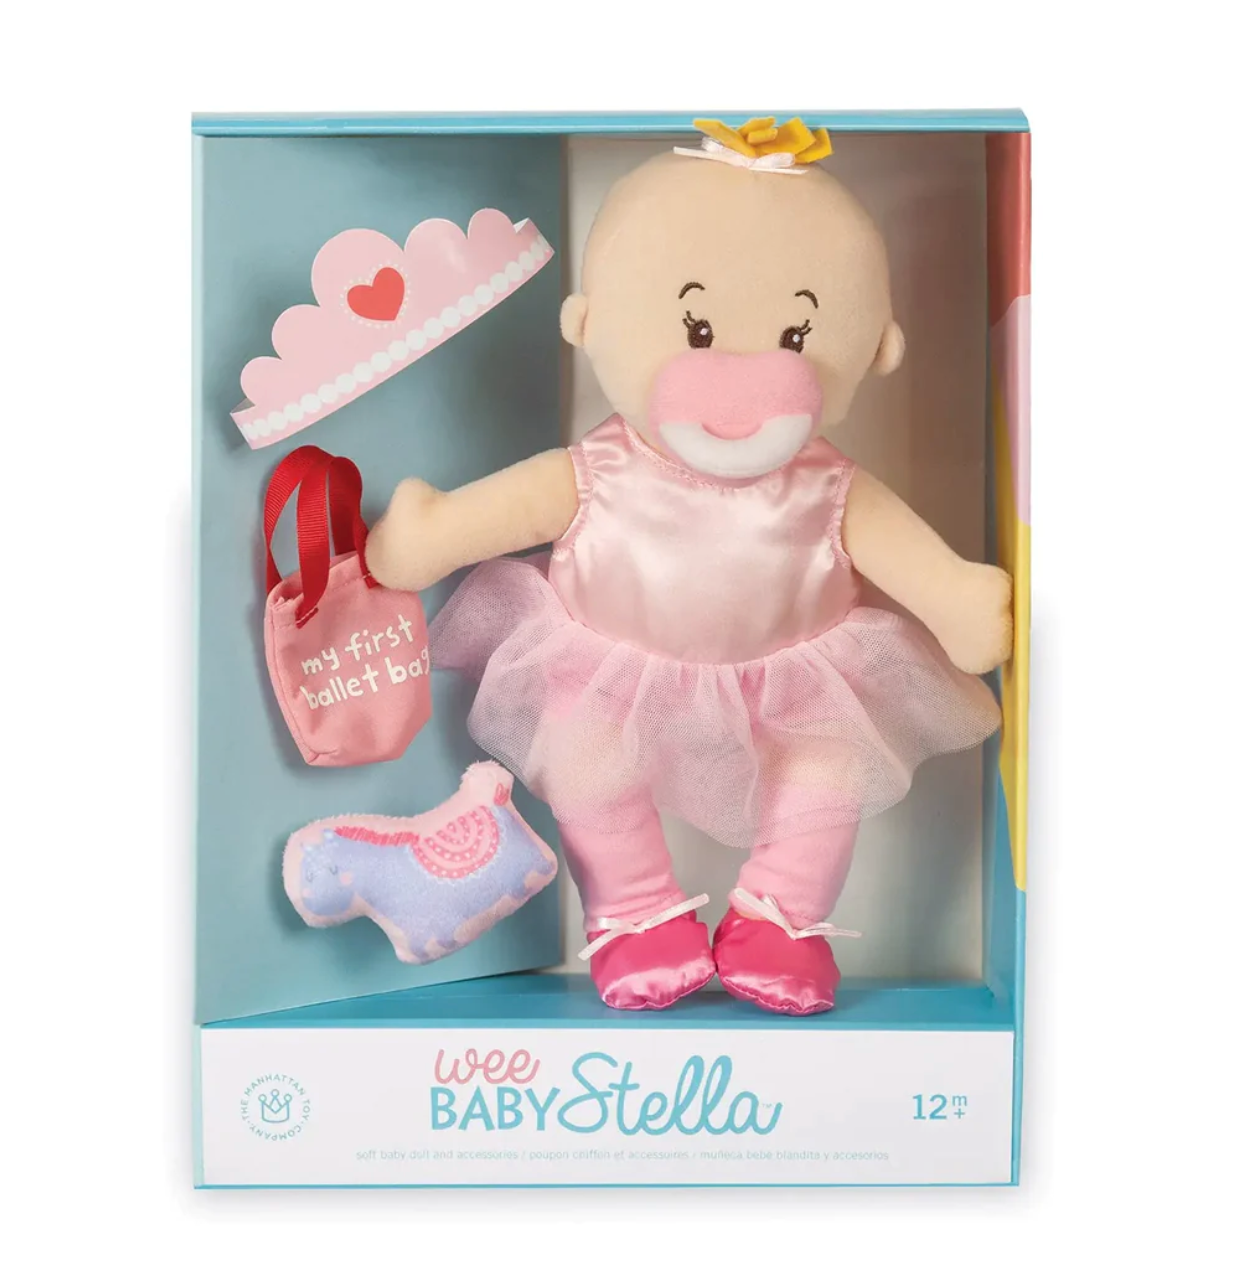 Wee Baby Stella Tiny Ballerina Set - Magpies Paducah